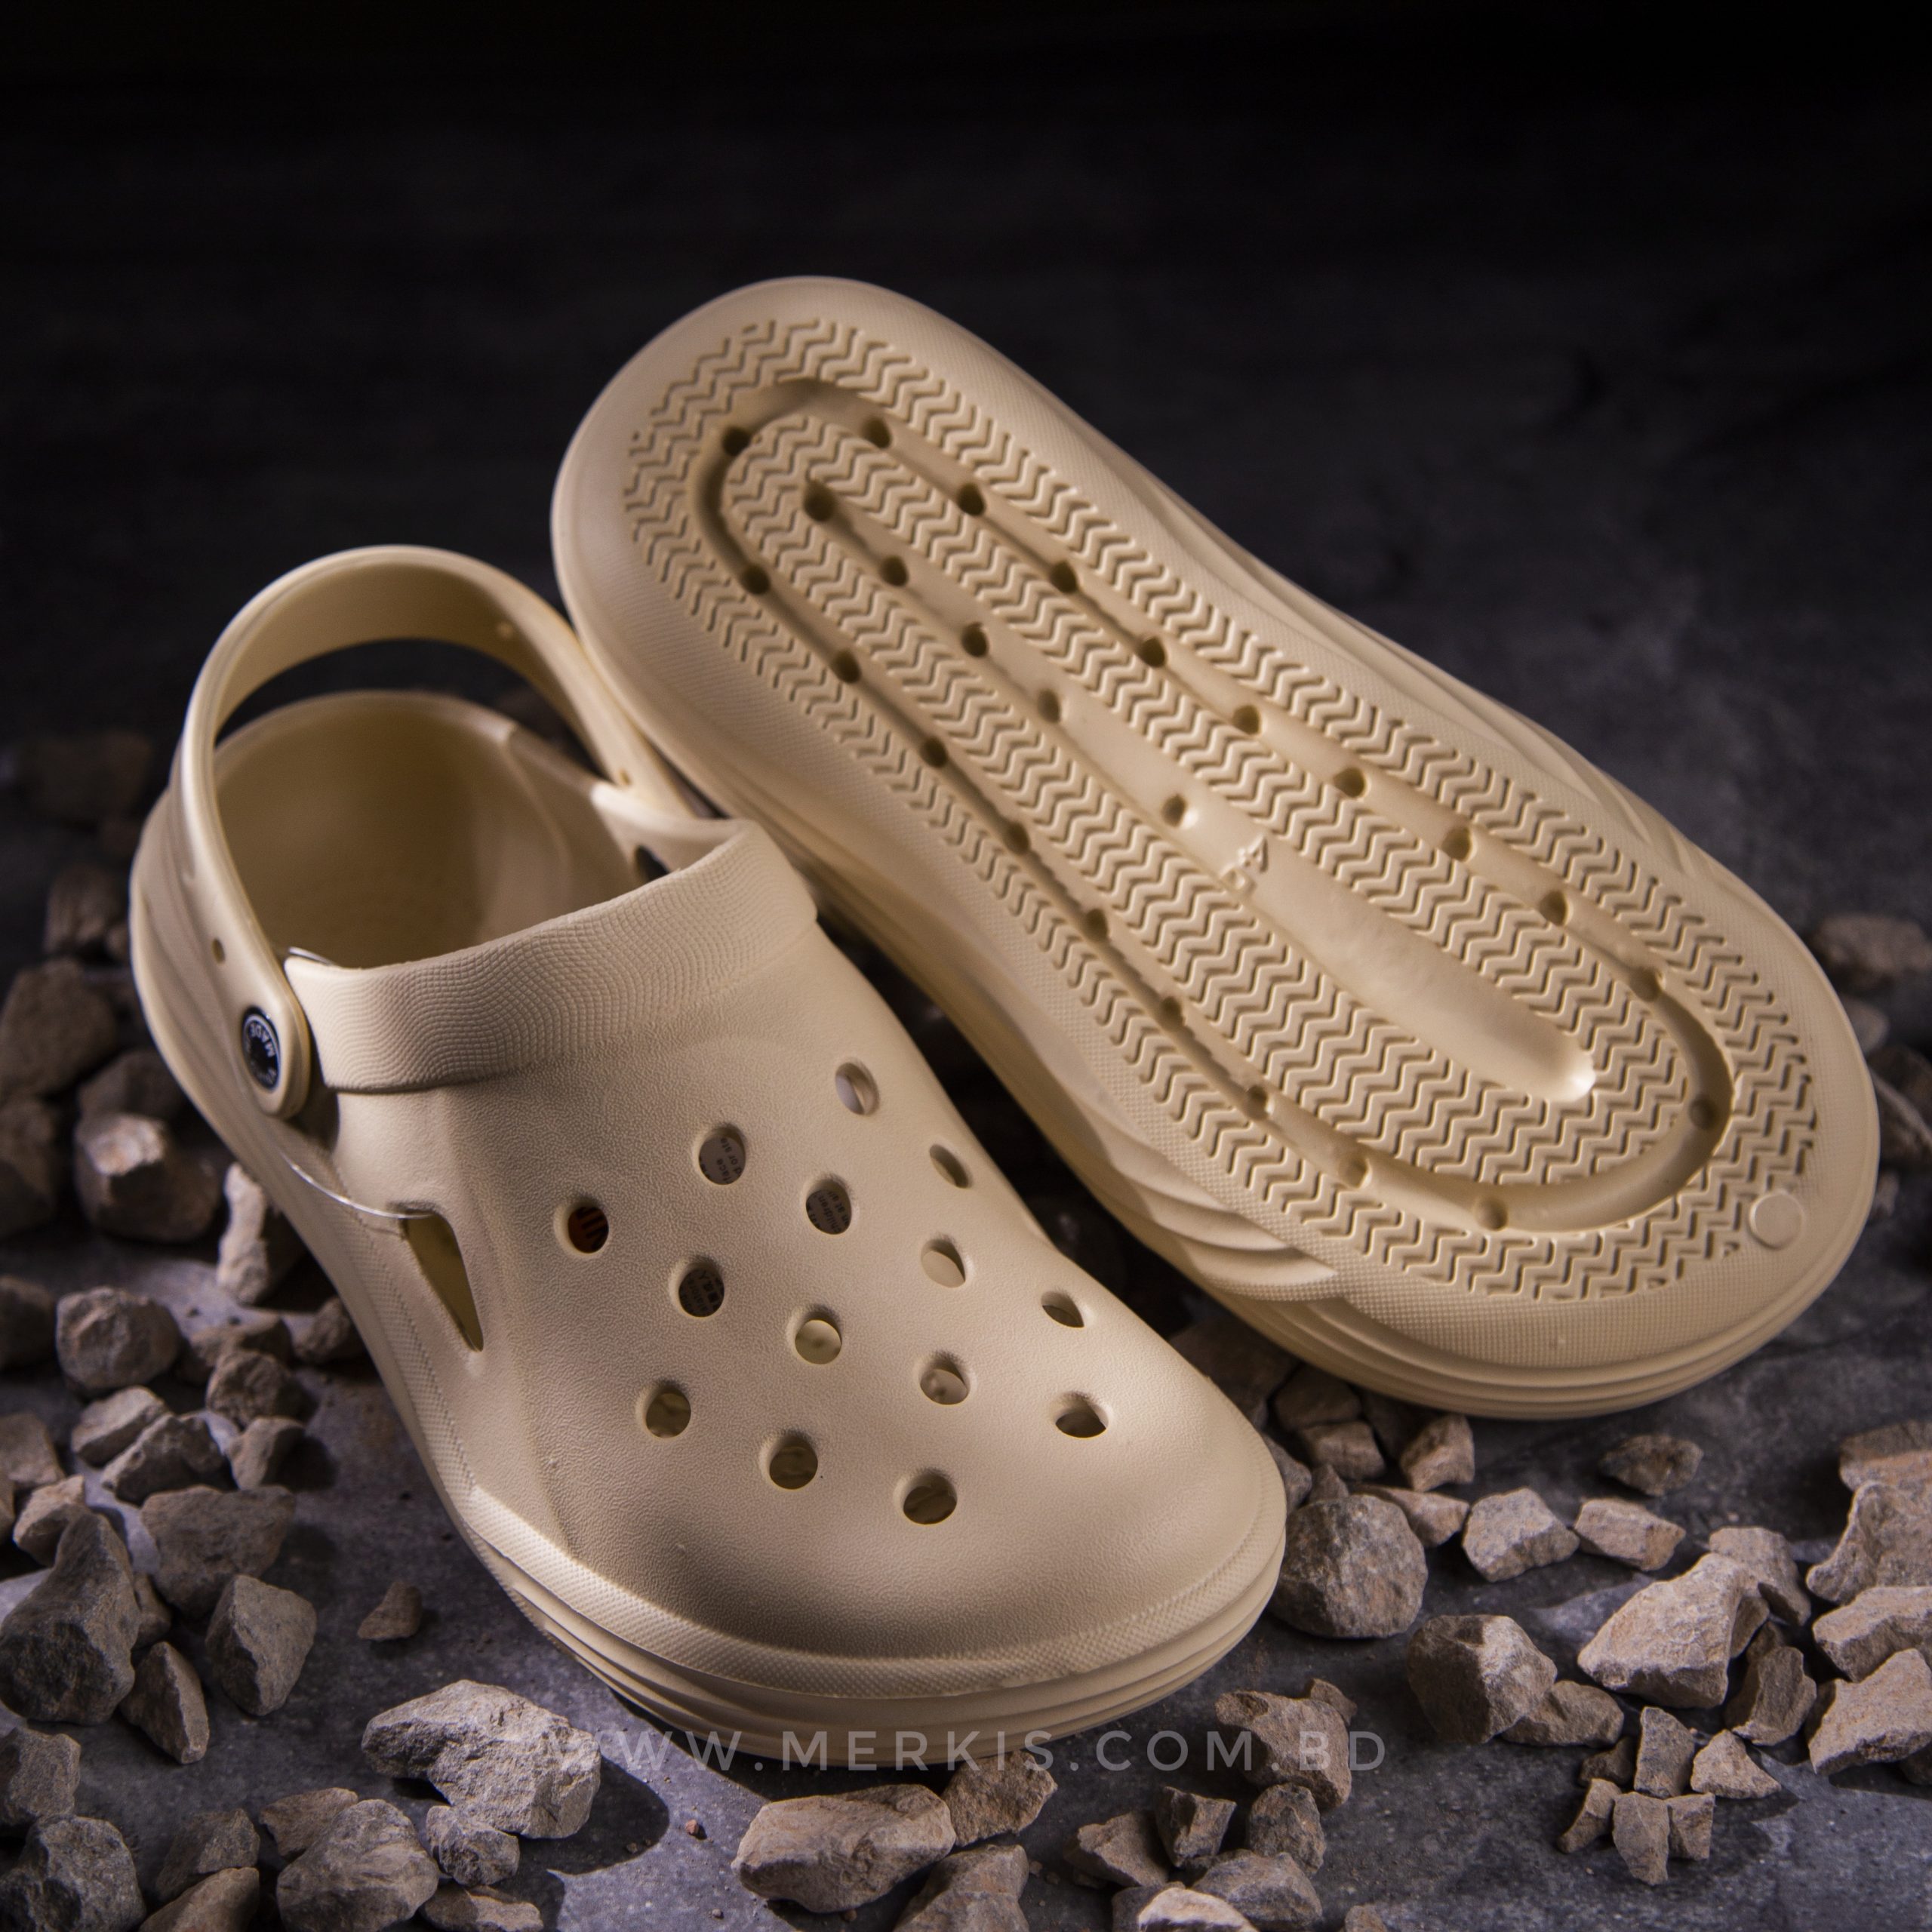 Men's Crocs Sandals: Comfort & Style Combined